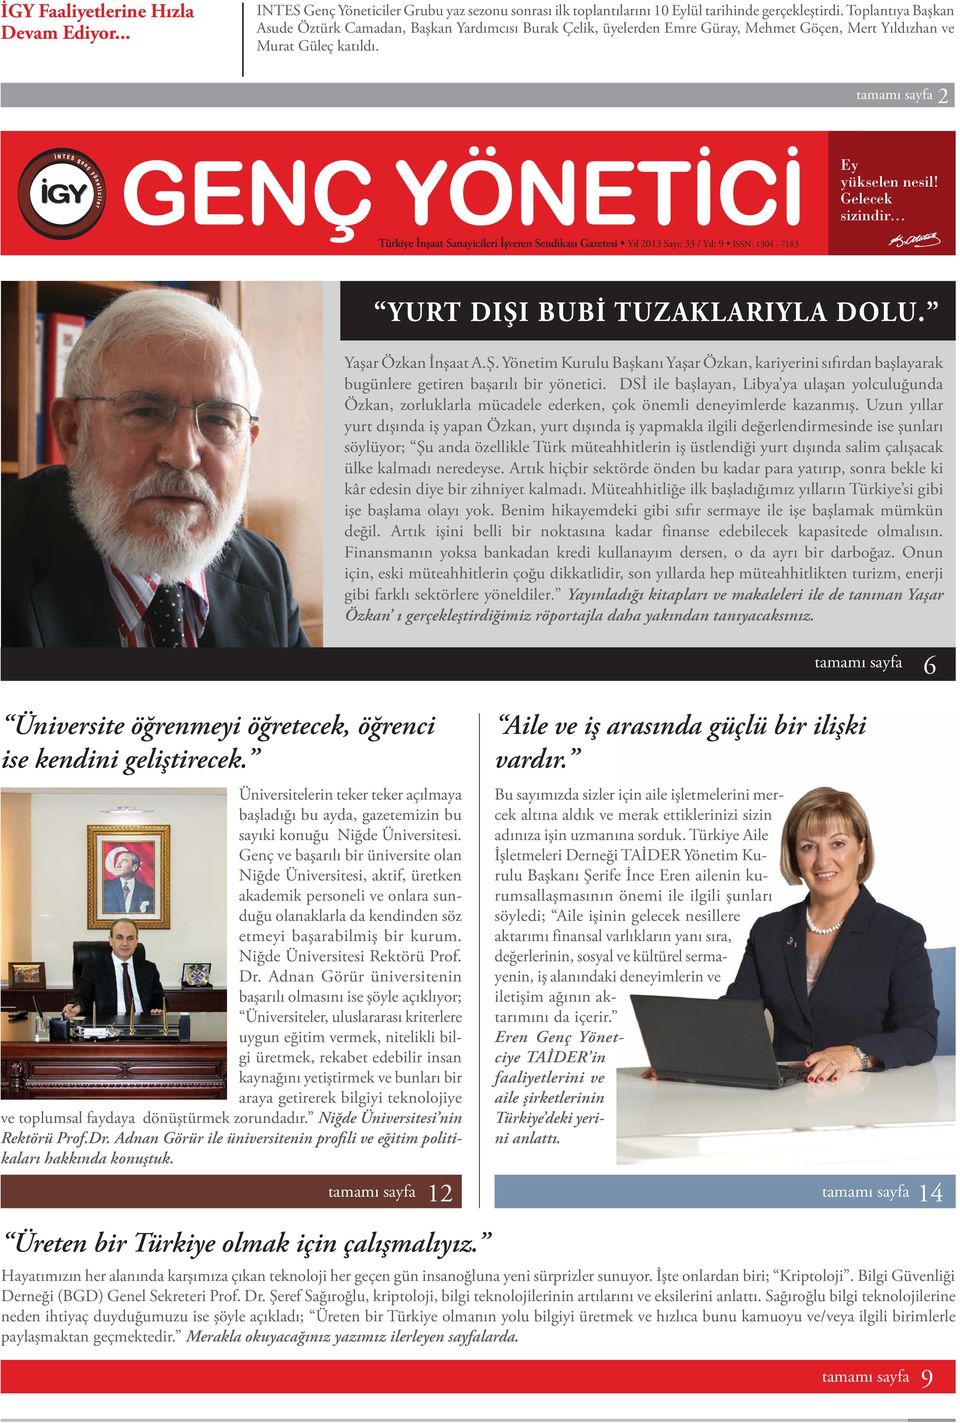 .. Türkiye İnşaat Sanayicileri İşveren Sendikası Gazetesi Yıl 2013 Sayı: 33 / Yıl: 9 ISSN: 1304-7183 YURT DIŞI